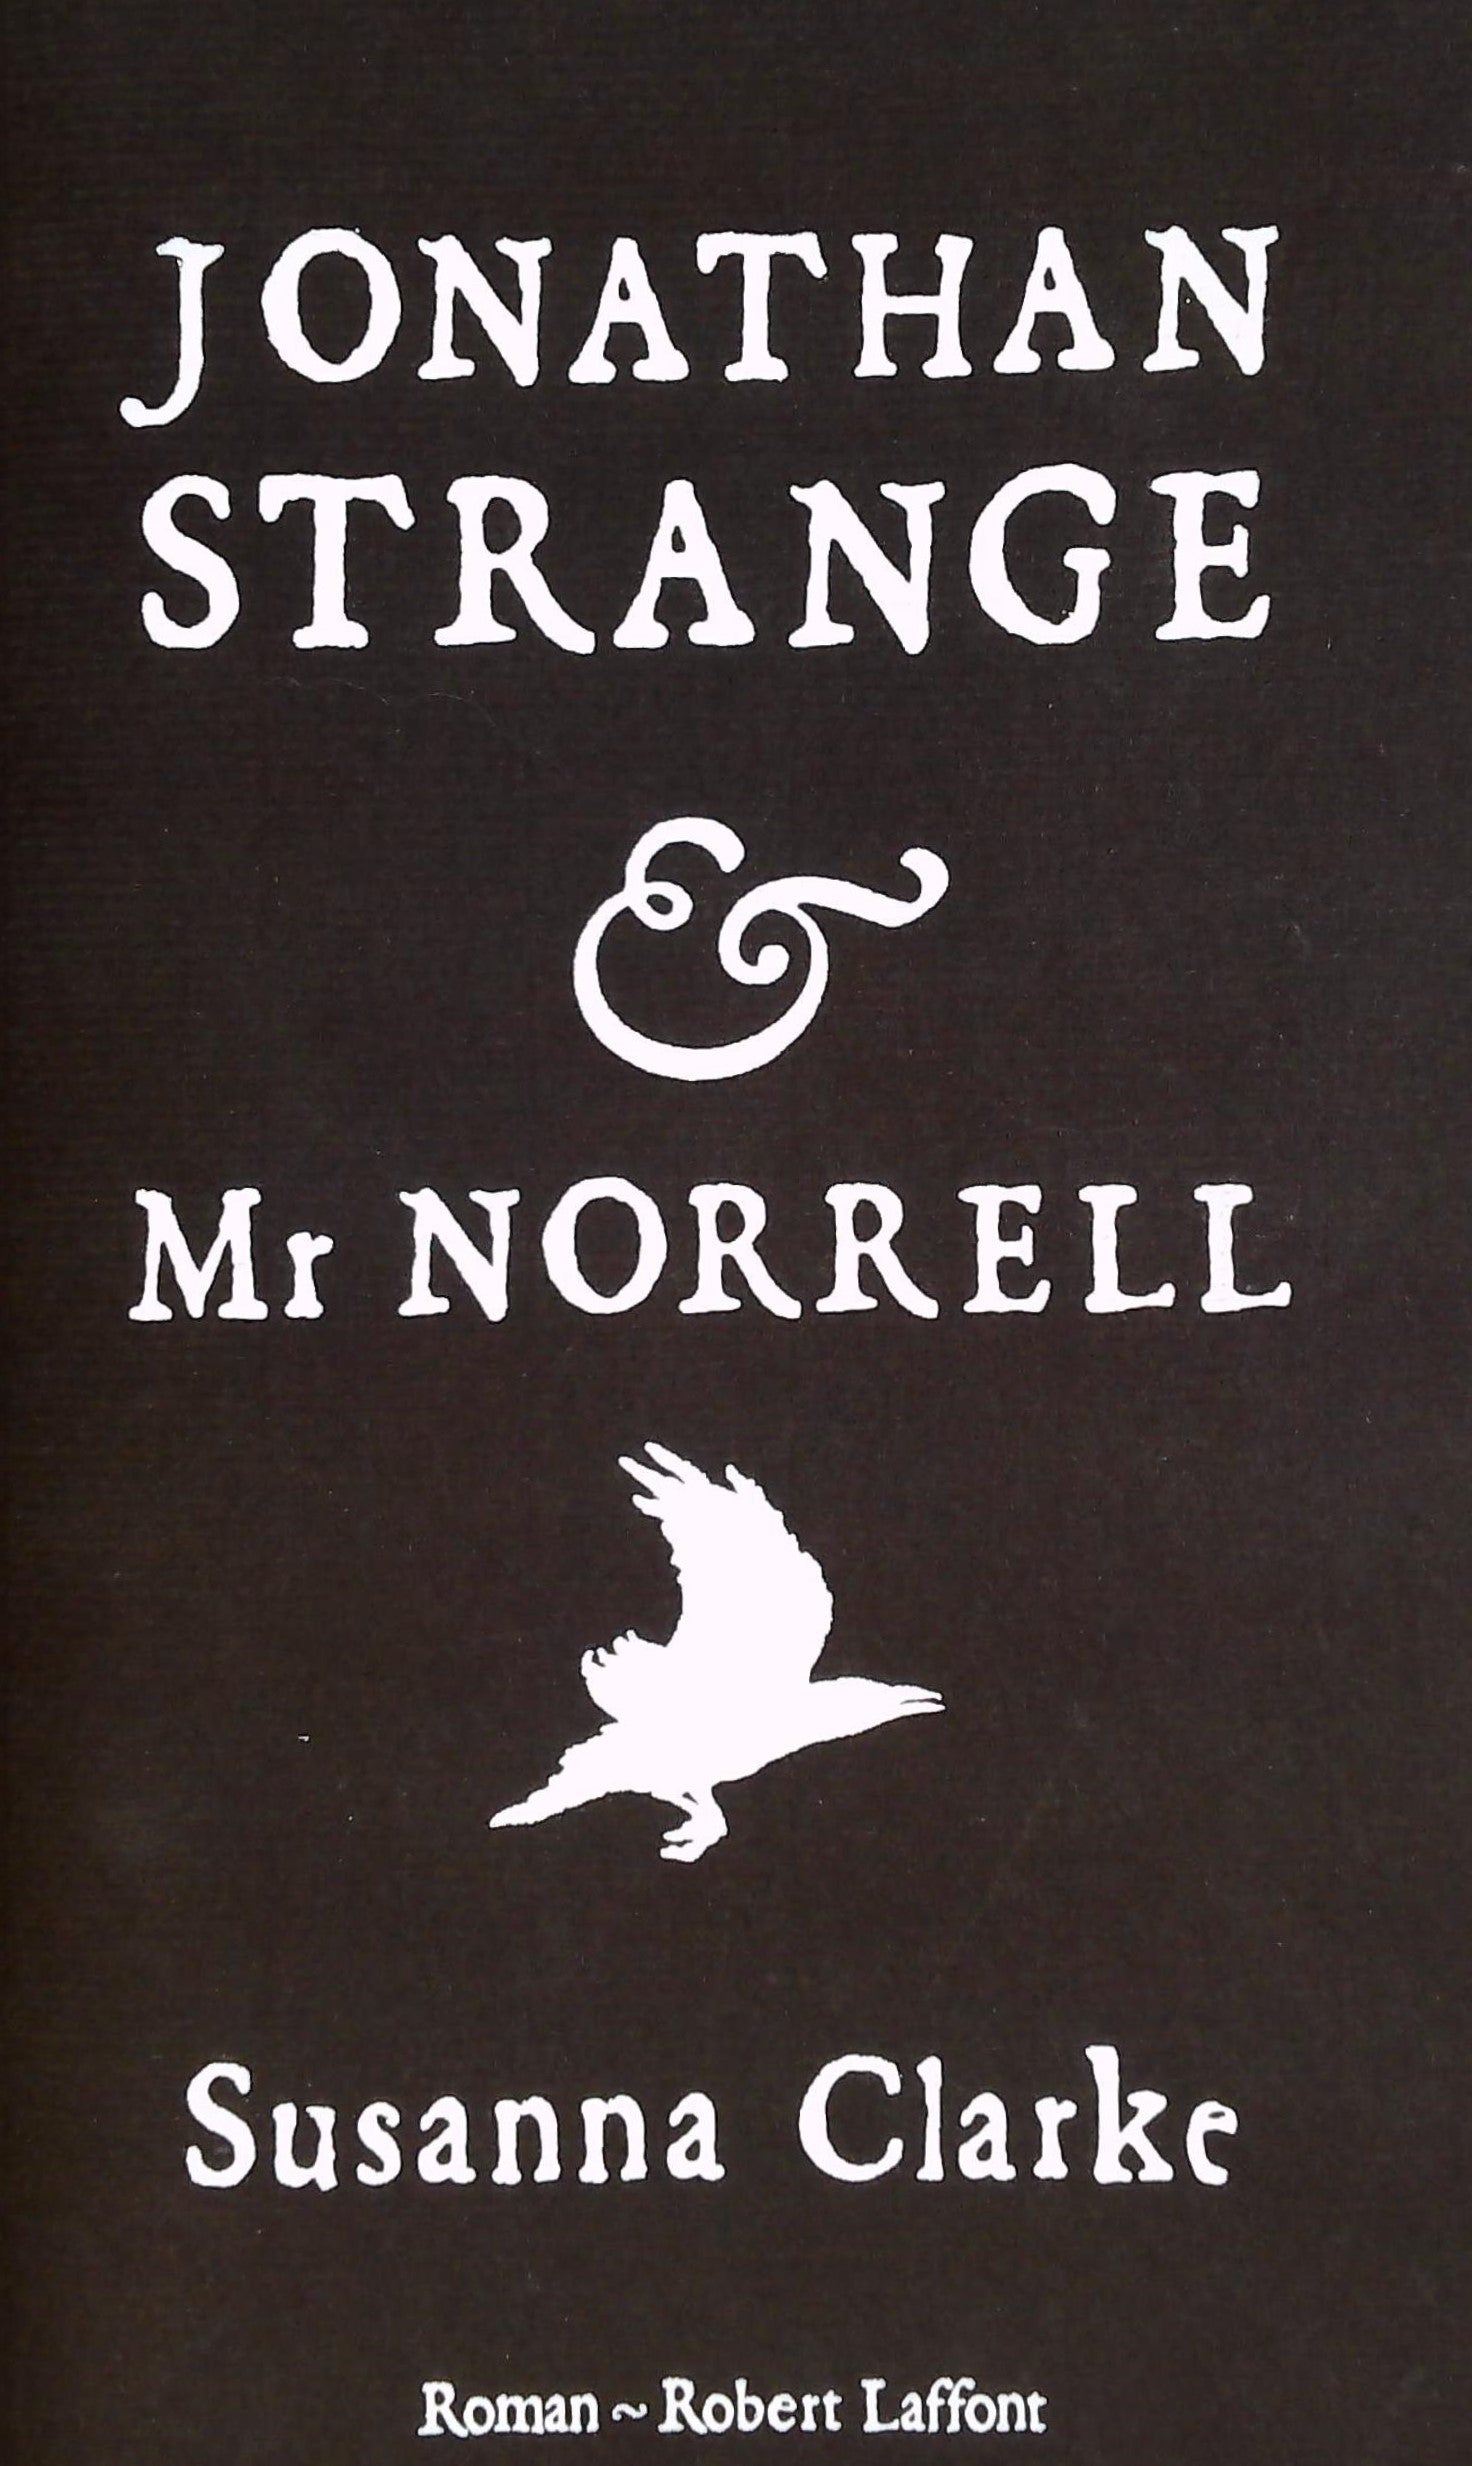 Livre ISBN 2221108876 Jonathan Strange & Mr Norrell (Susanna Clarke)